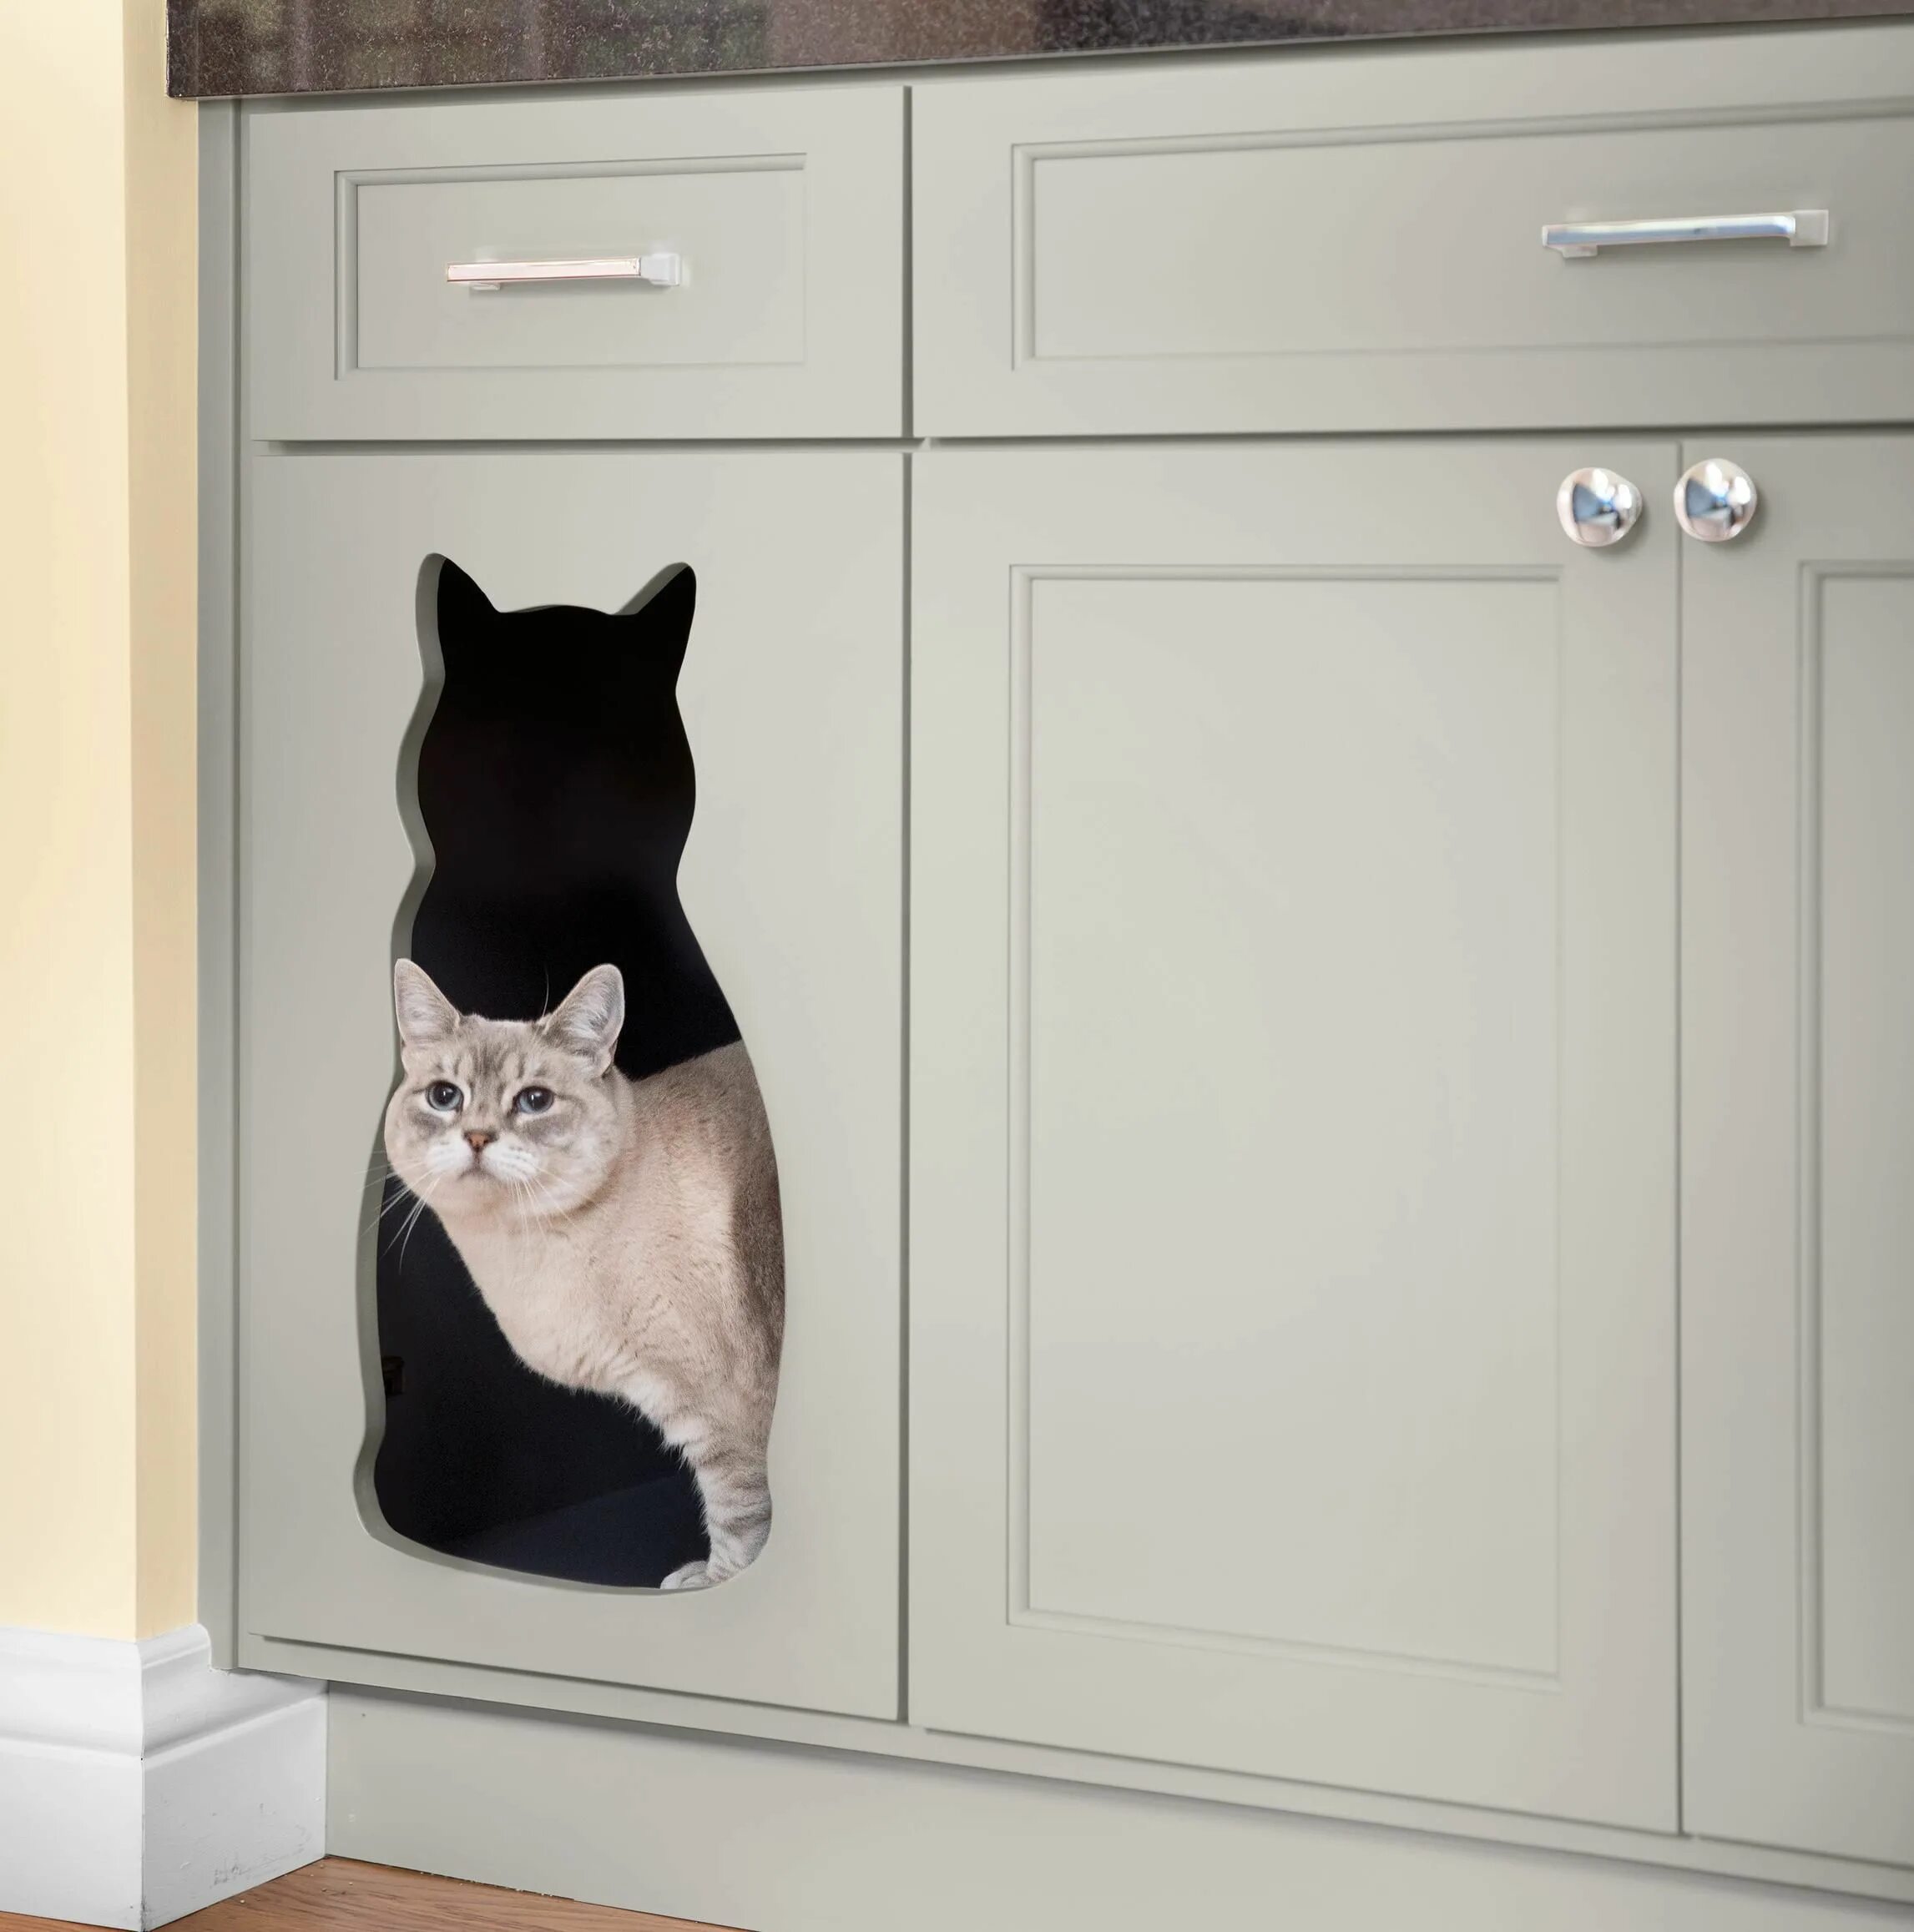 Cats kitchen. Дверь для кошки. Дверца для кота. Место для кошки на кухне. Двери для котов в туалет.